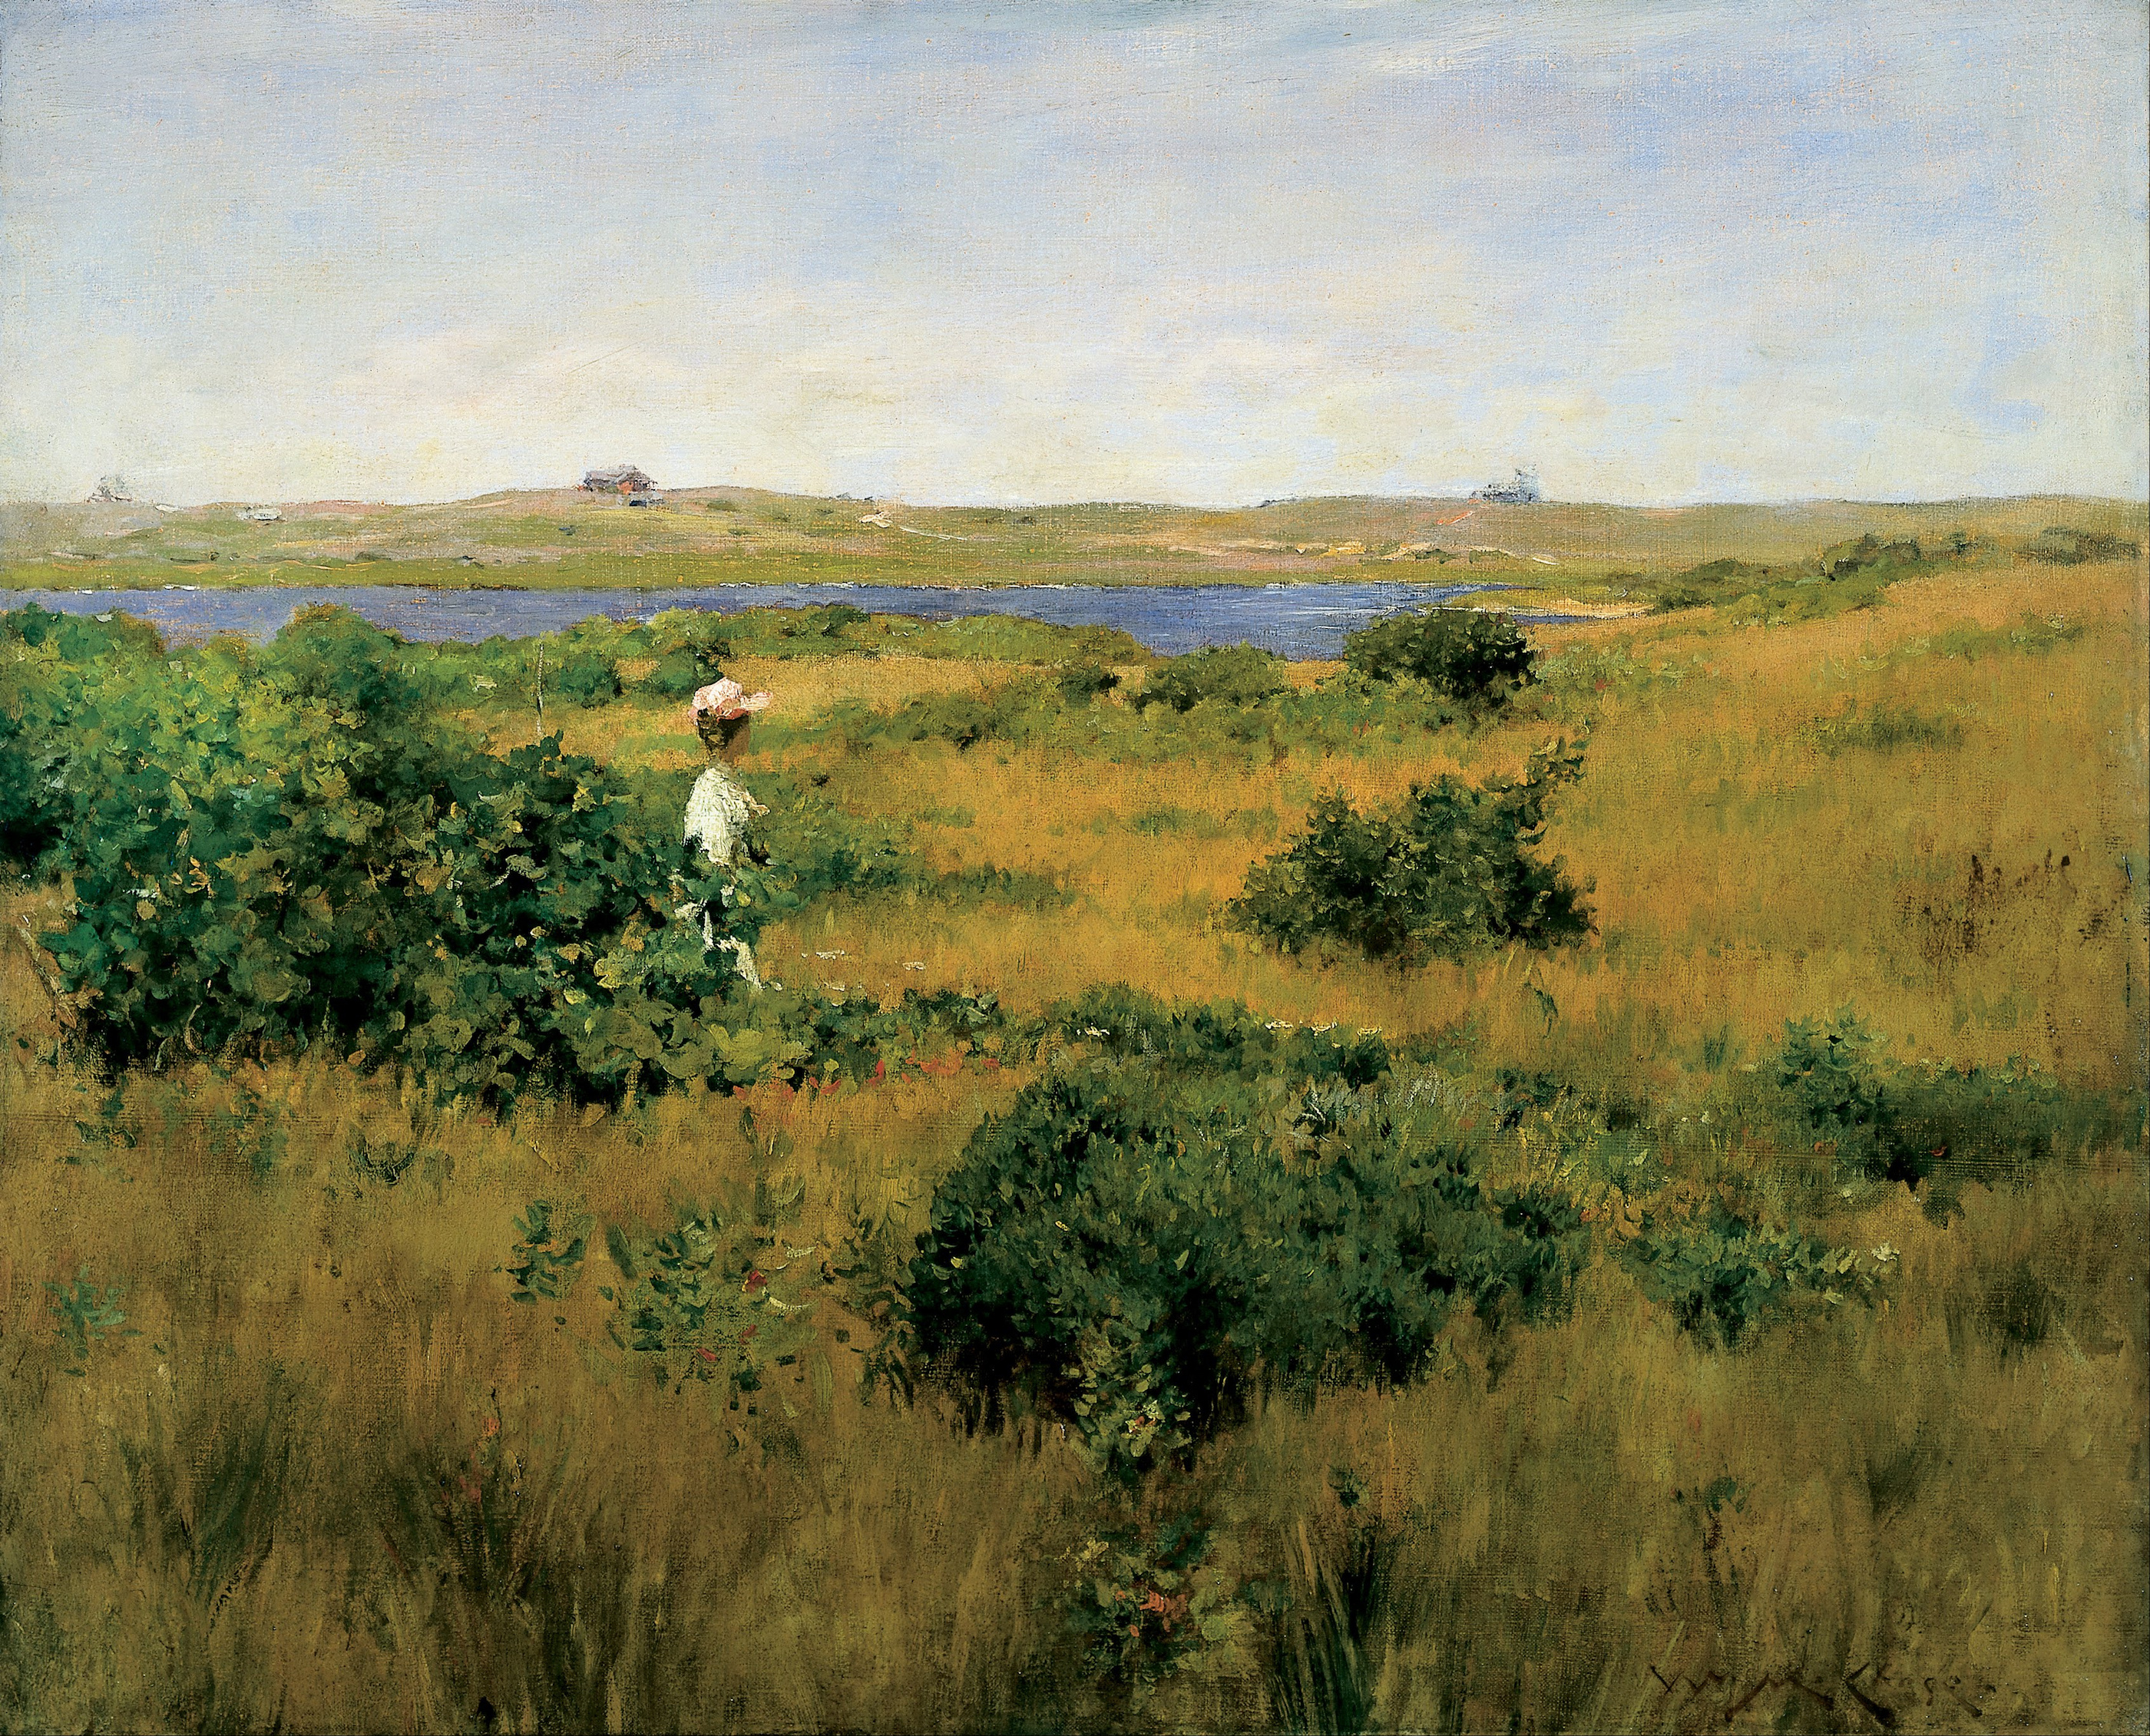 シネコックヒルズの夏 by William Merritt Chase  - 1891年 - 67.3 x 82.6 cm 